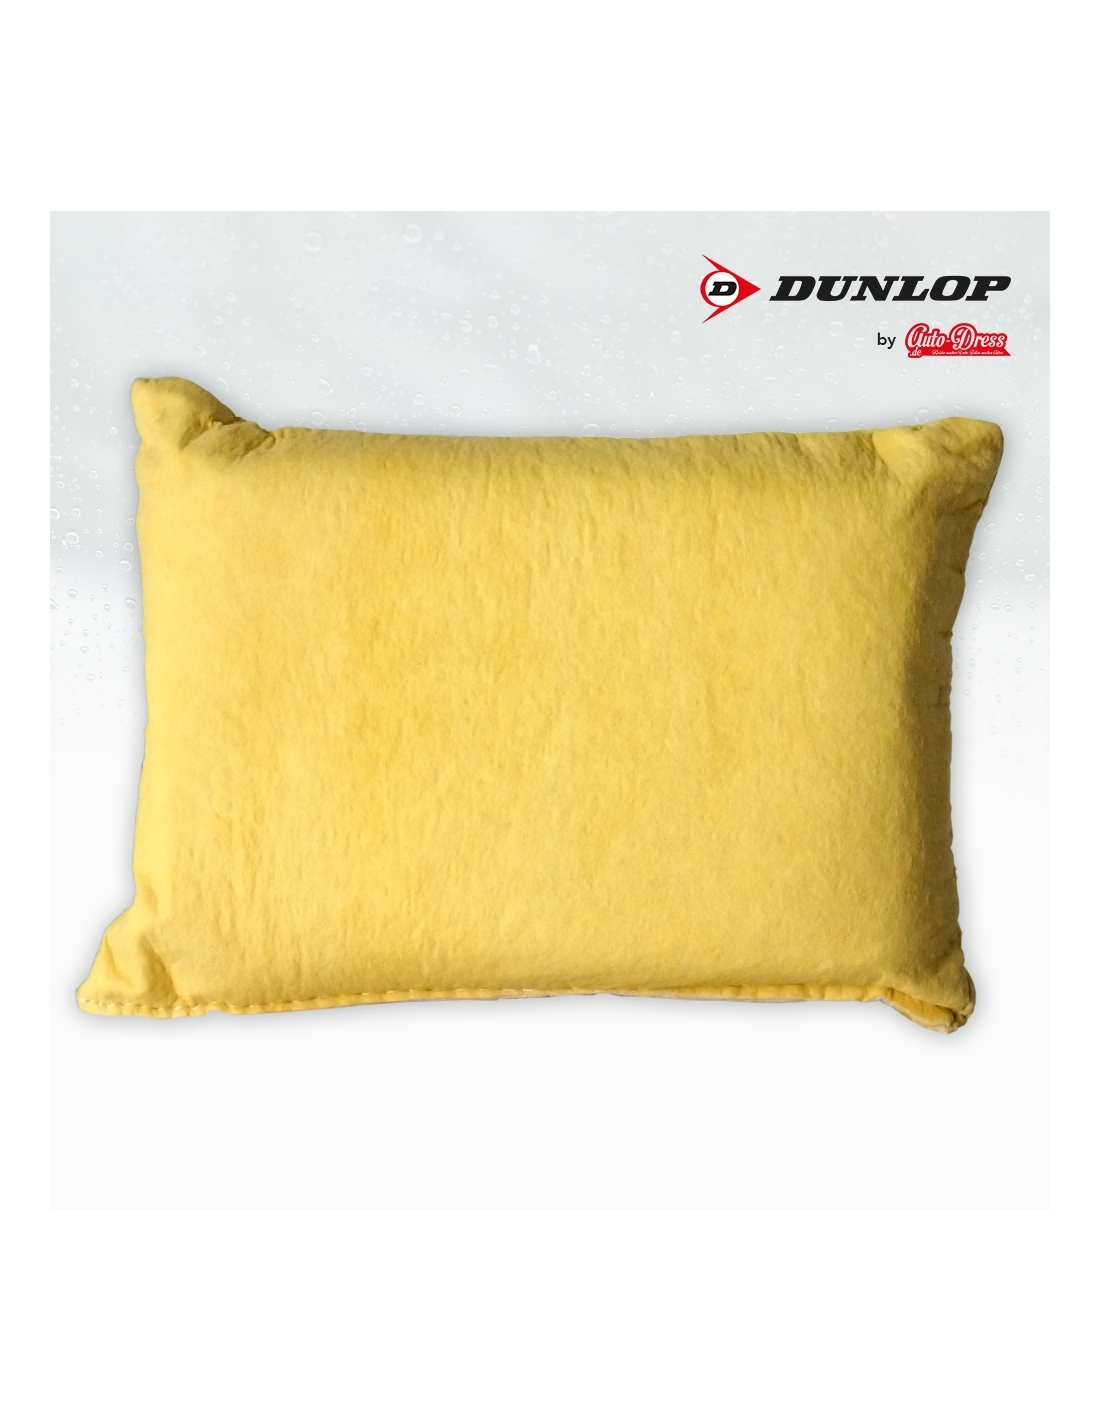 10x Dunlop Insektenschwamm Reinigungsschwamm Schwamm Gelb #68732 